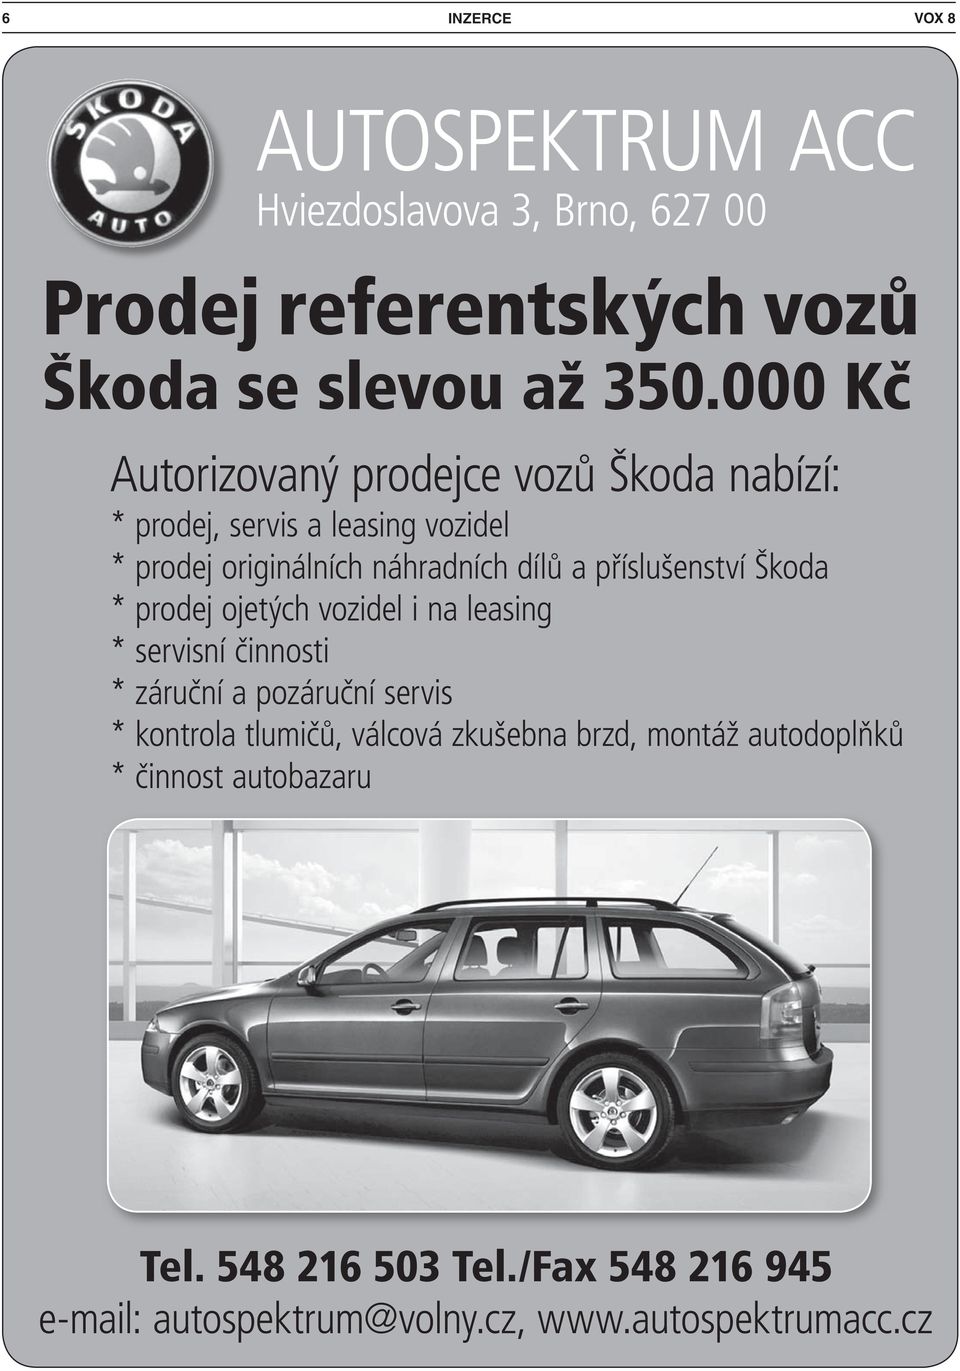 příslušenství Škoda * prodej ojetých vozidel i na leasing * servisní činnosti * záruční a pozáruční servis * kontrola tlumičů,